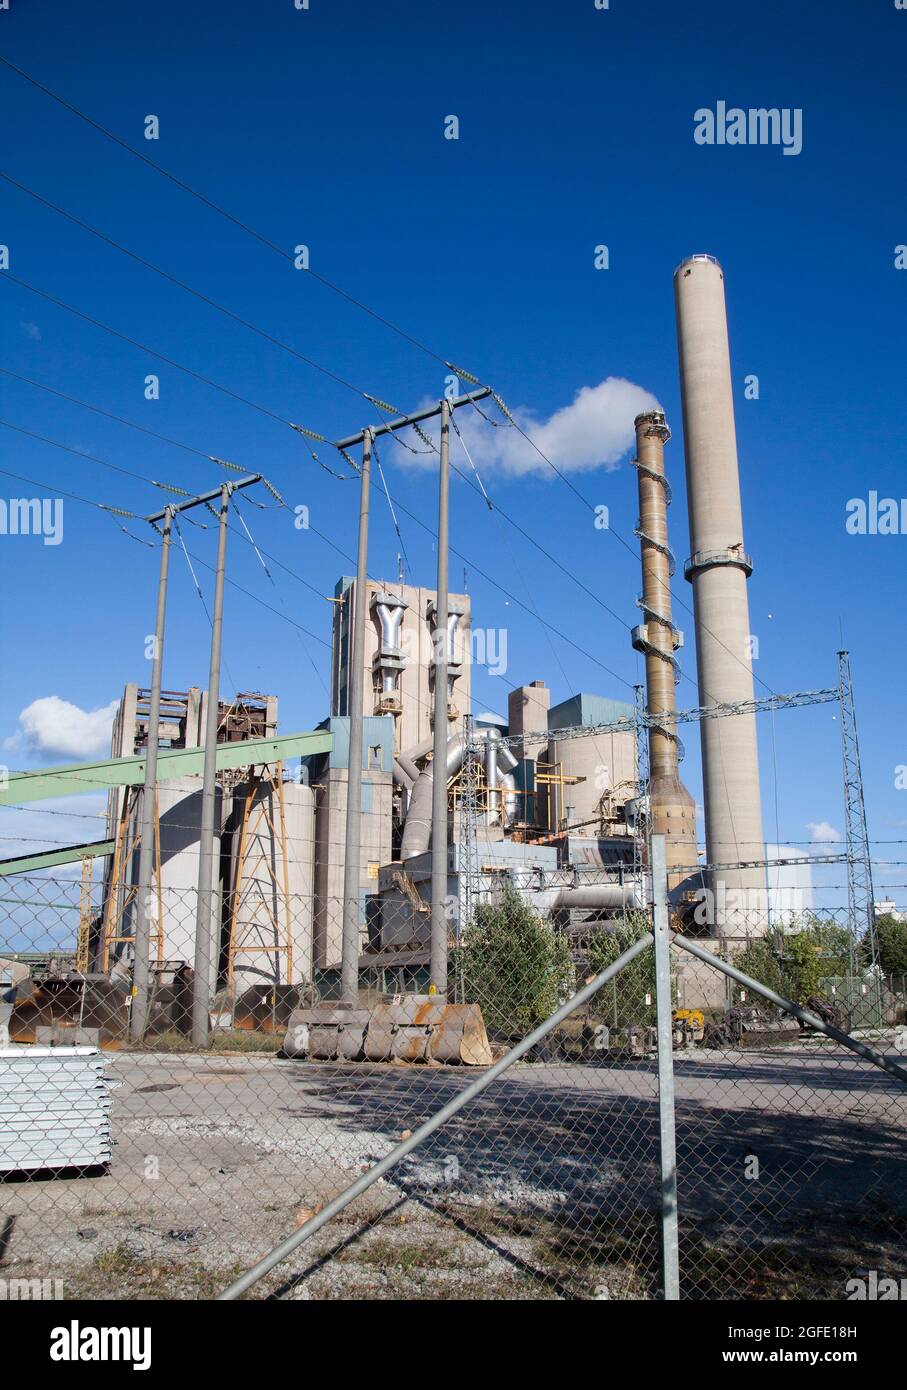 L'usine CEMENTA de SLite Gotland produit du ciment de calcaire dont l'usine est propriétaire par Heidelberg Industry Group et a un impact important sur l'environnement de Gotland Banque D'Images